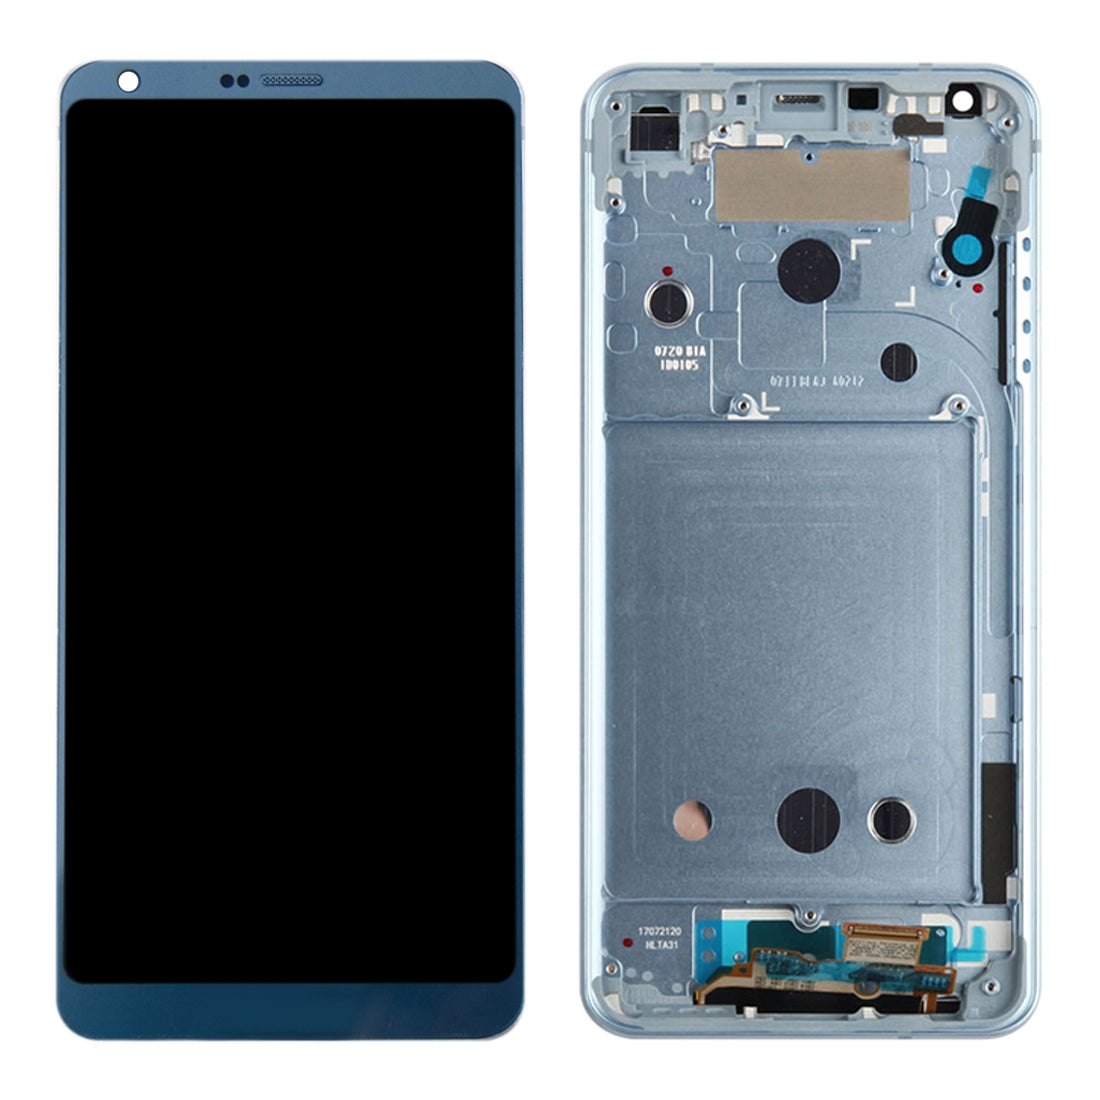 LCD Screen + Touch + Frame LG G6 H870 H870DS H872 LS993 VS998 US997 Blue